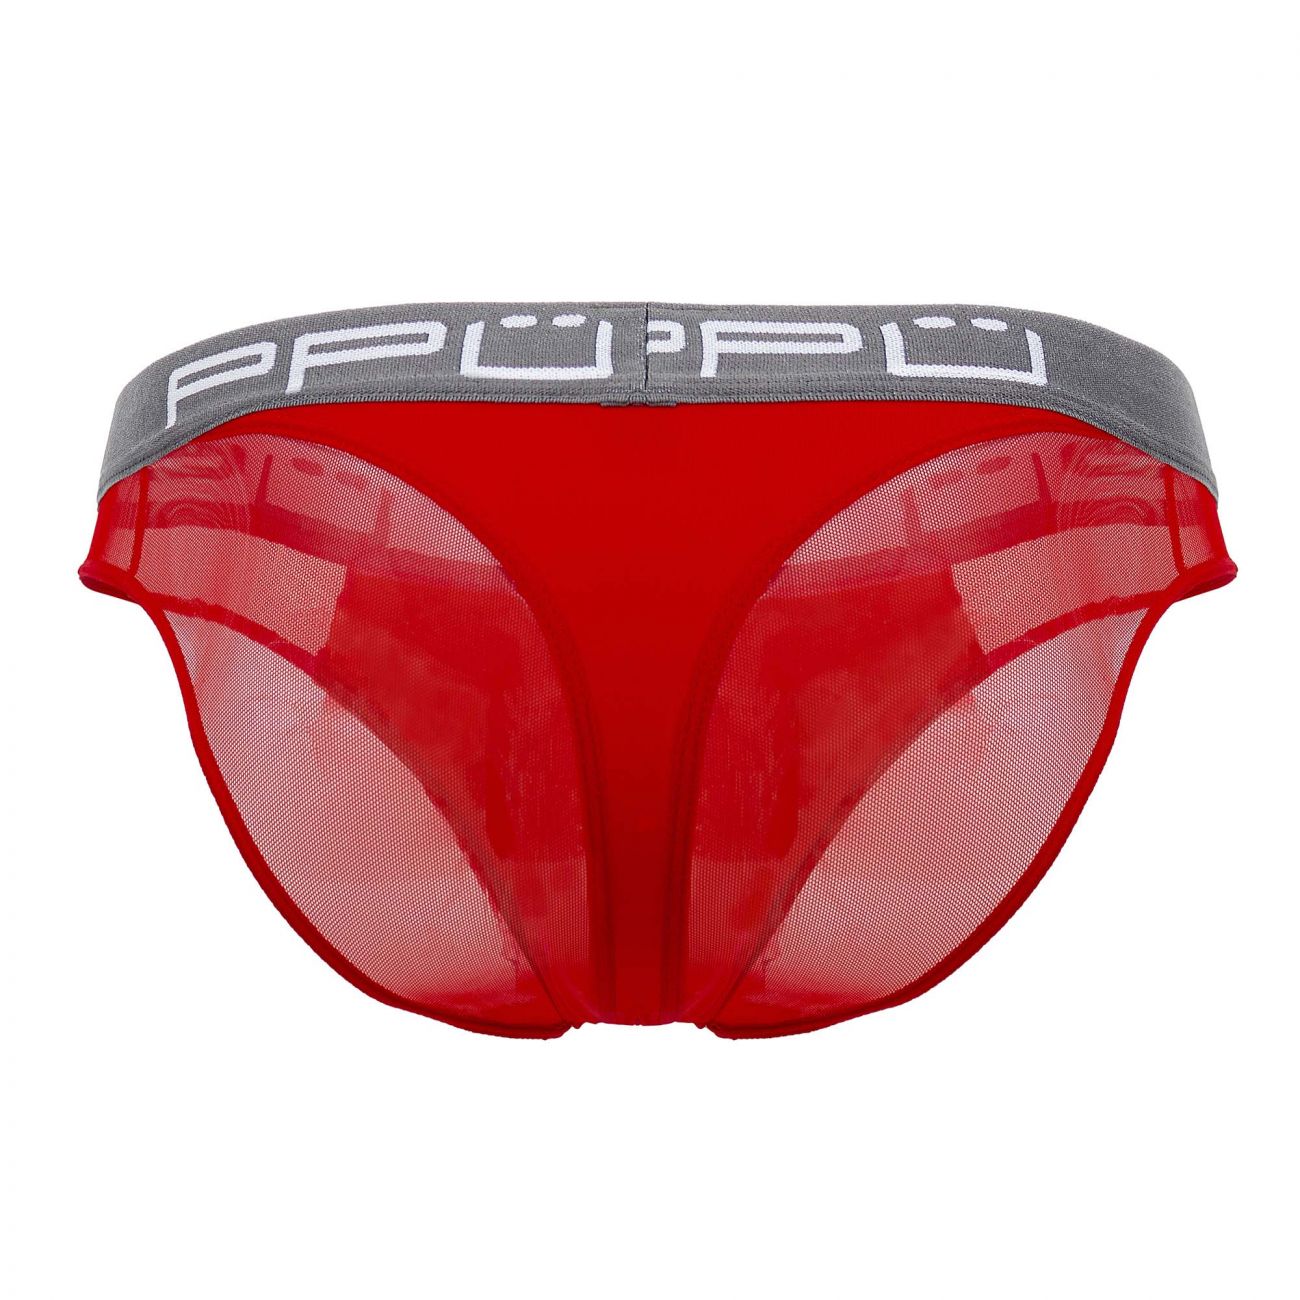 PPU 2113 Mesh Bikini Thongs Red